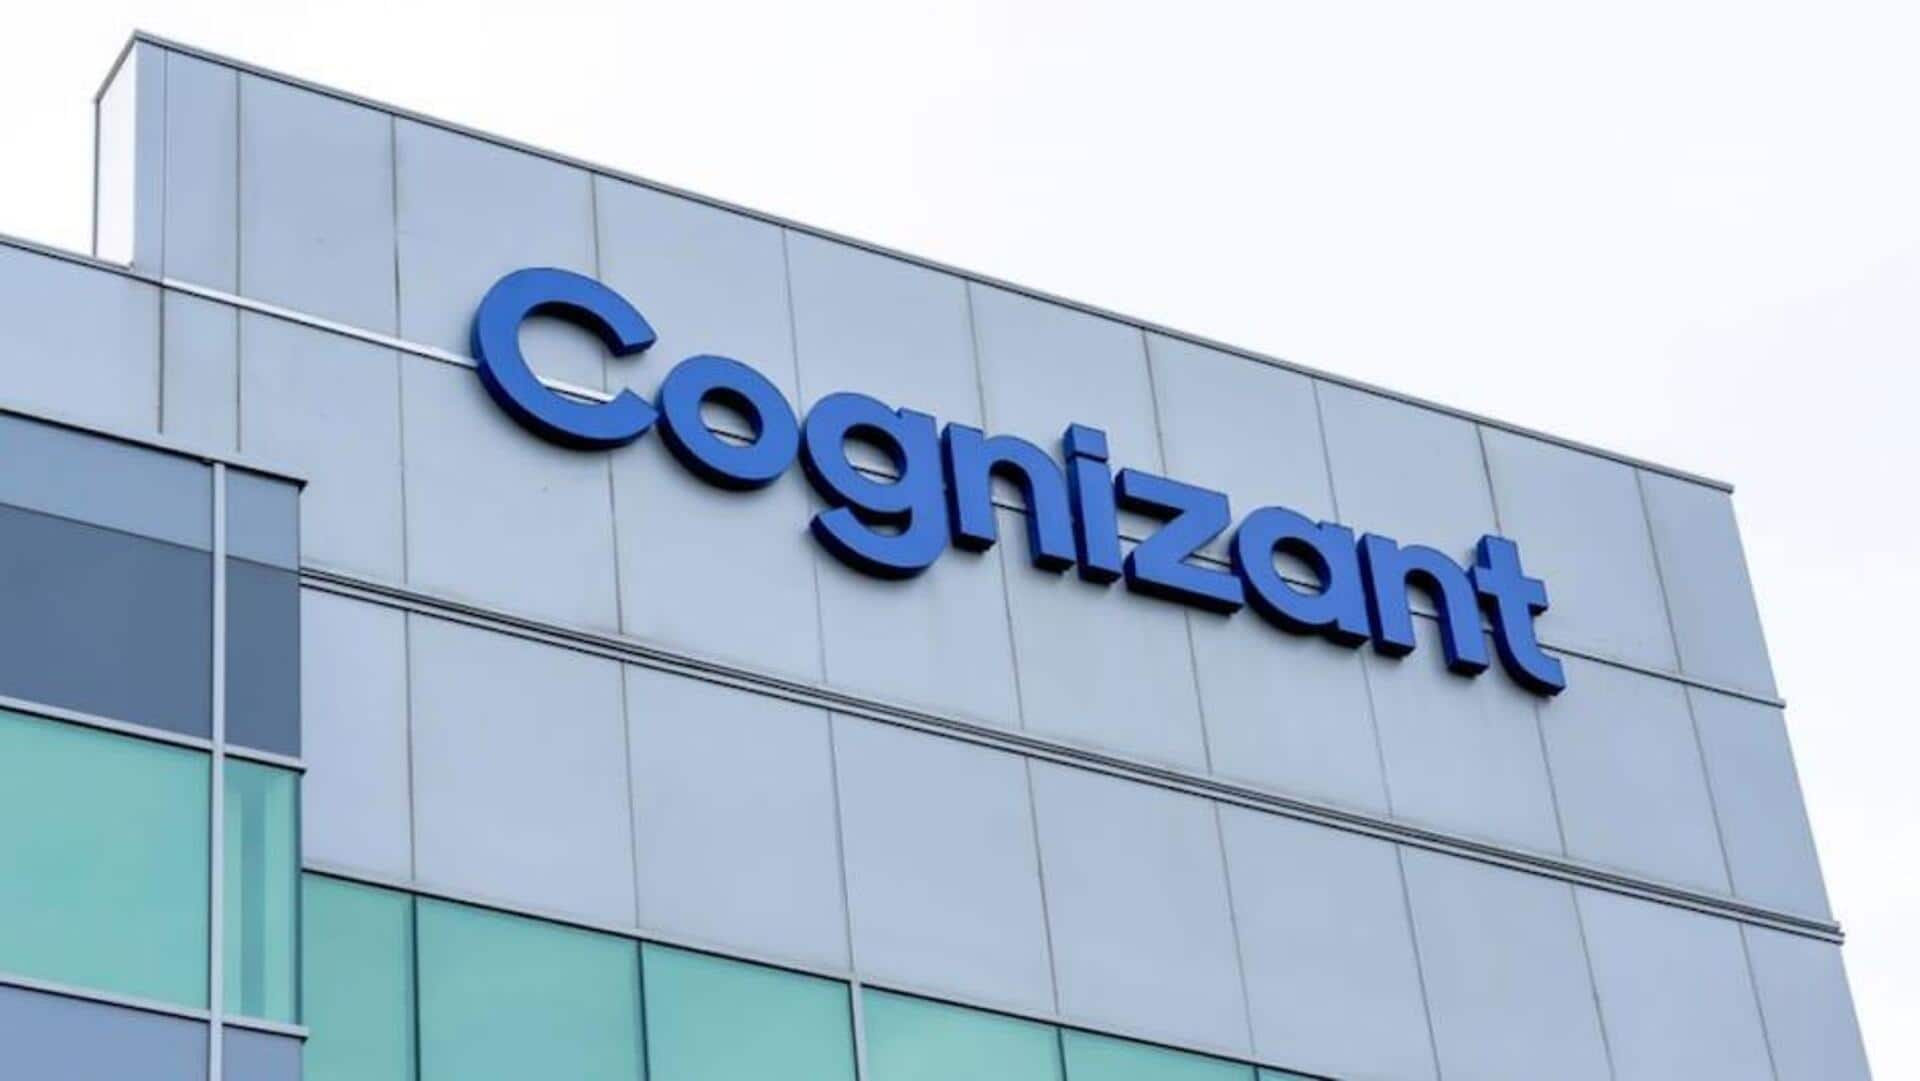 Cognizant's Q3 net profit declines 19.8% to $525 million